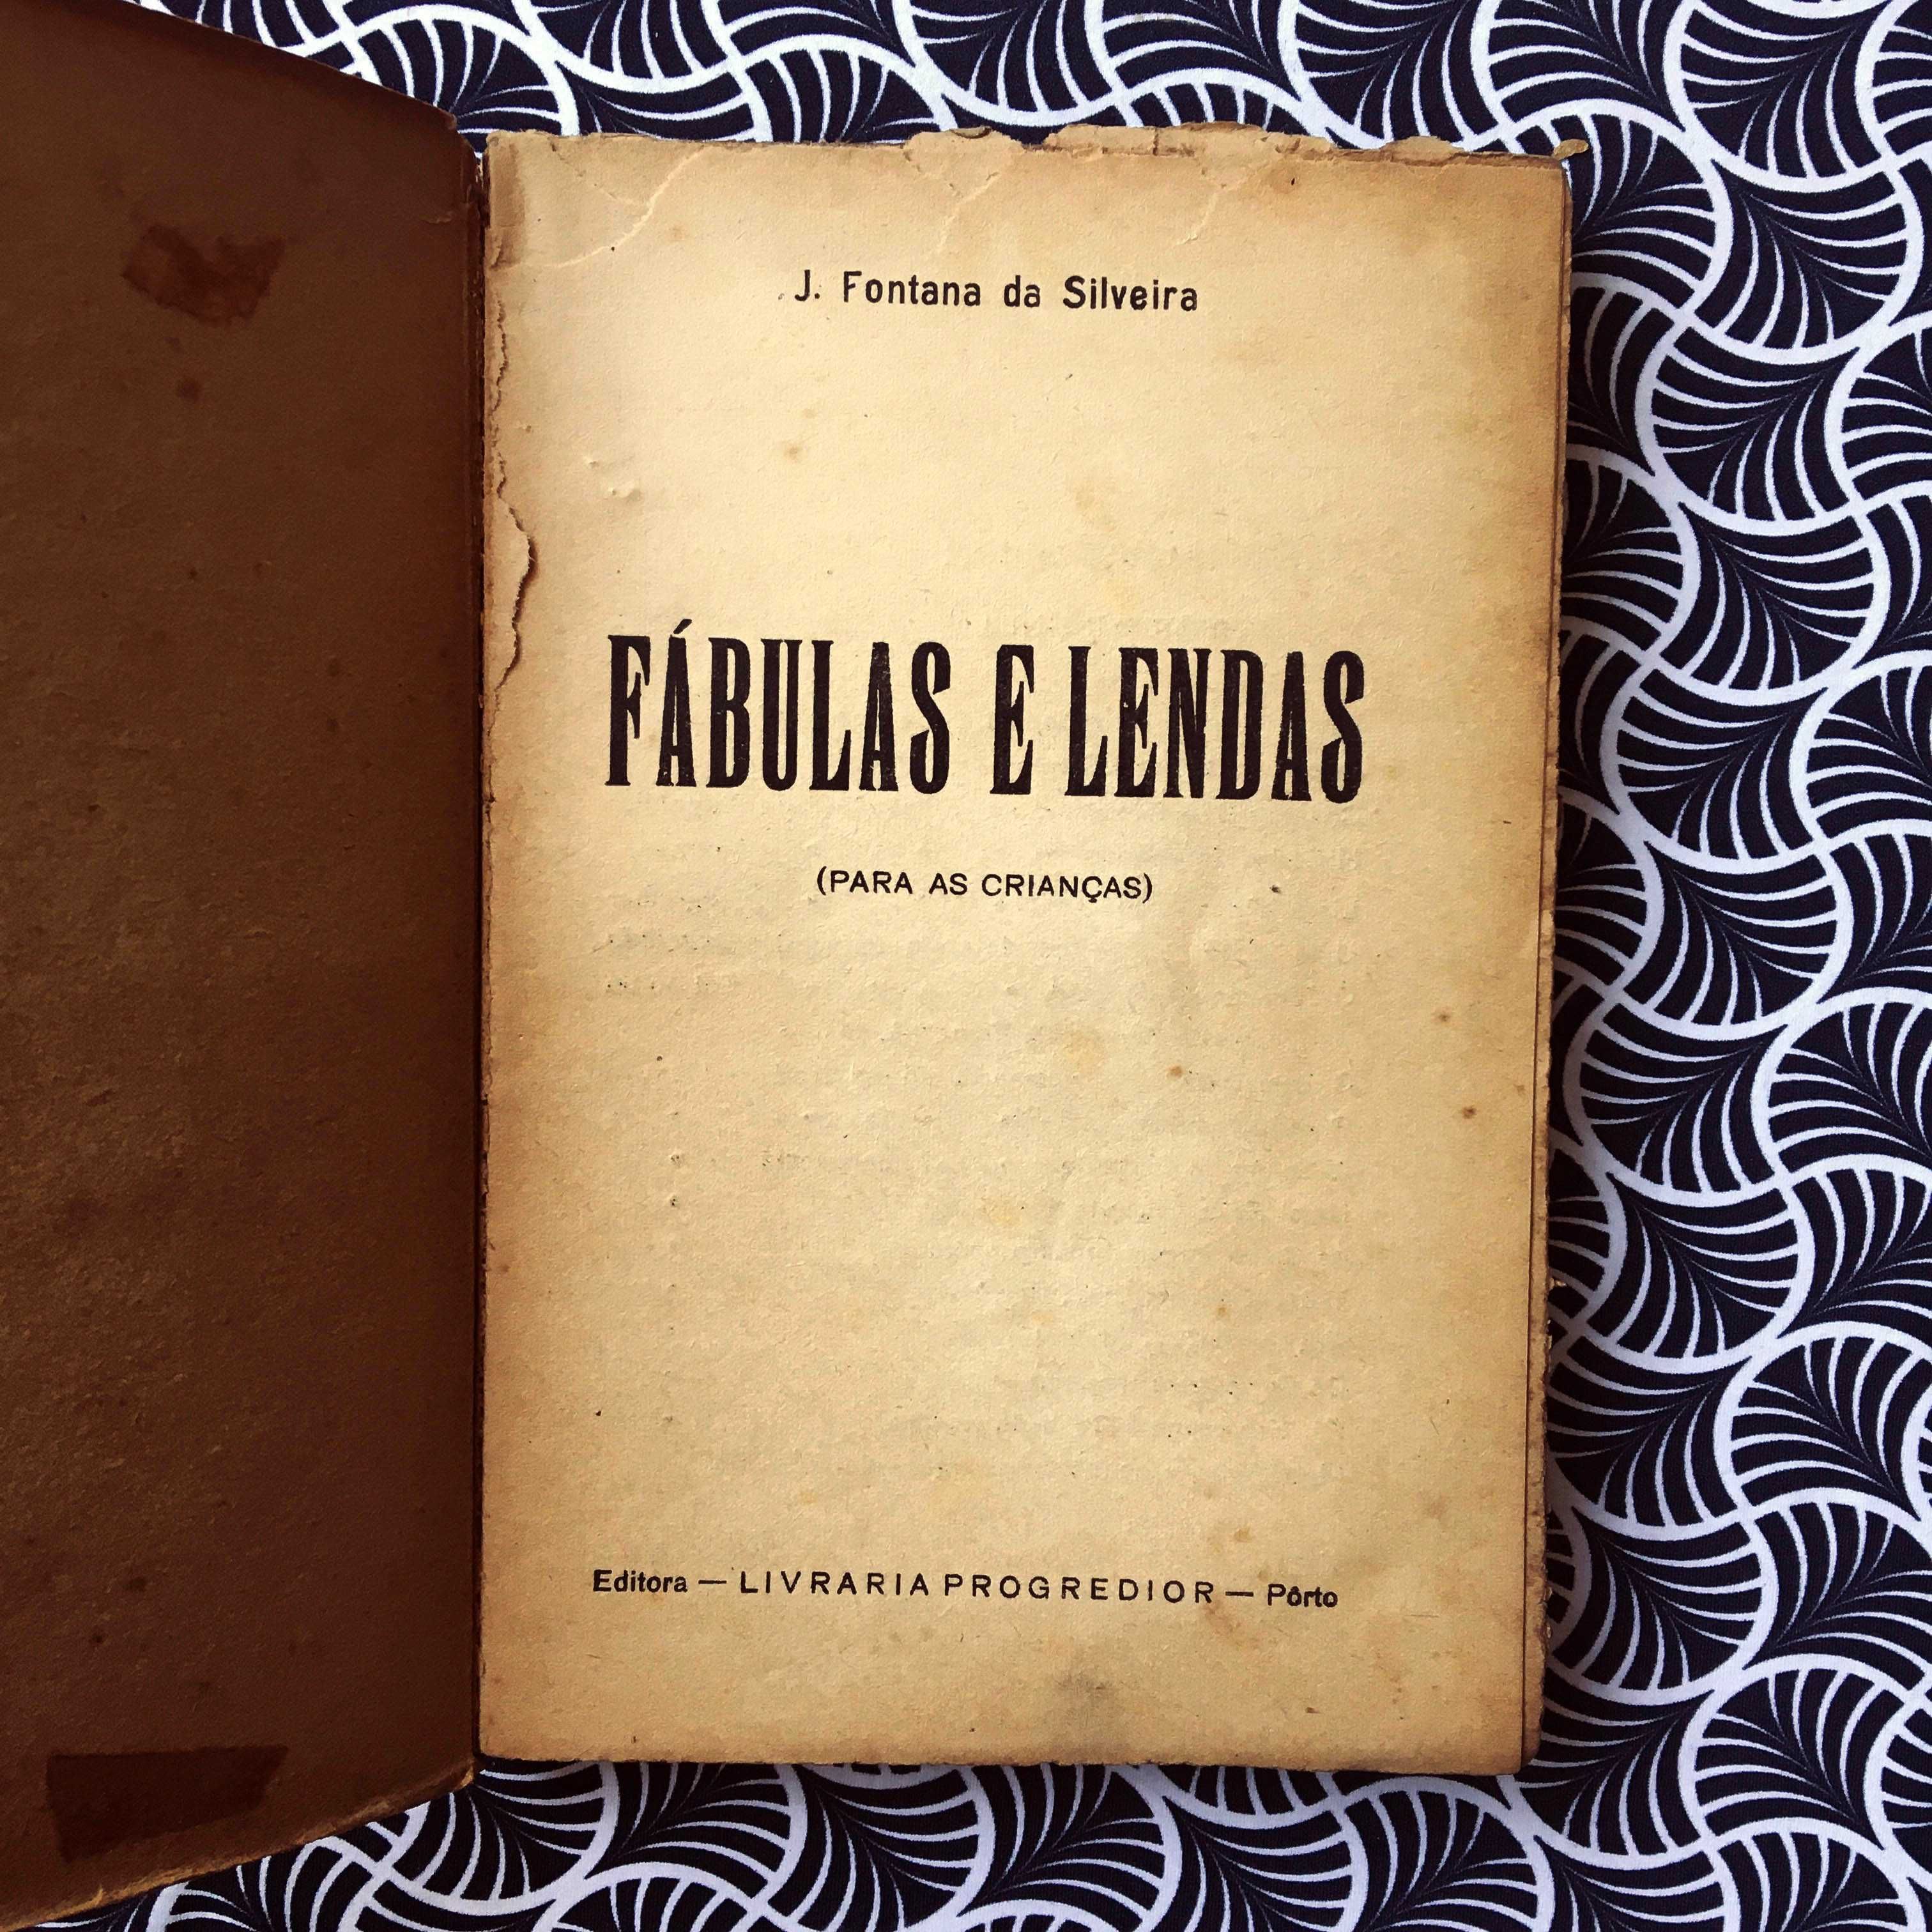 Fábulas e Lendas para as crianças (1ª ed.) - J. Fontana da Silveira